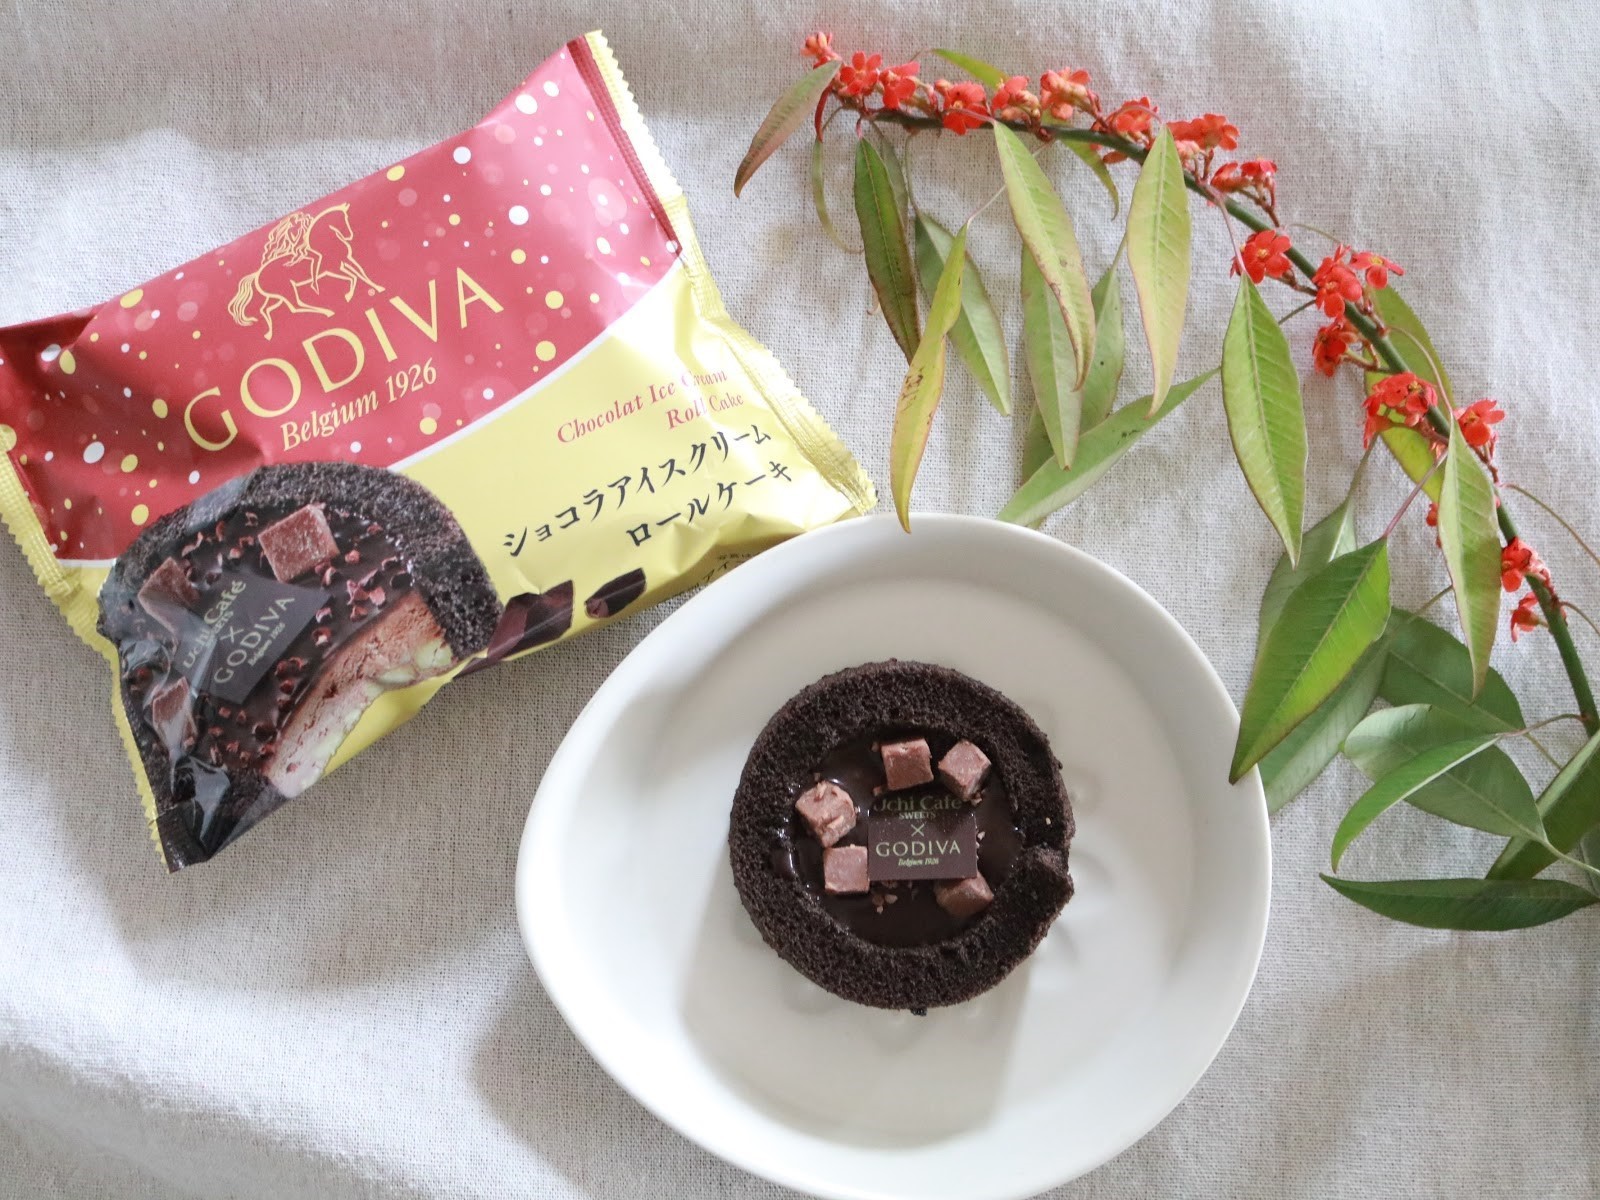 ローソンの新商品「GODIVA監修」冬にこそ食べたい濃厚ショコラのロールケーキアイス